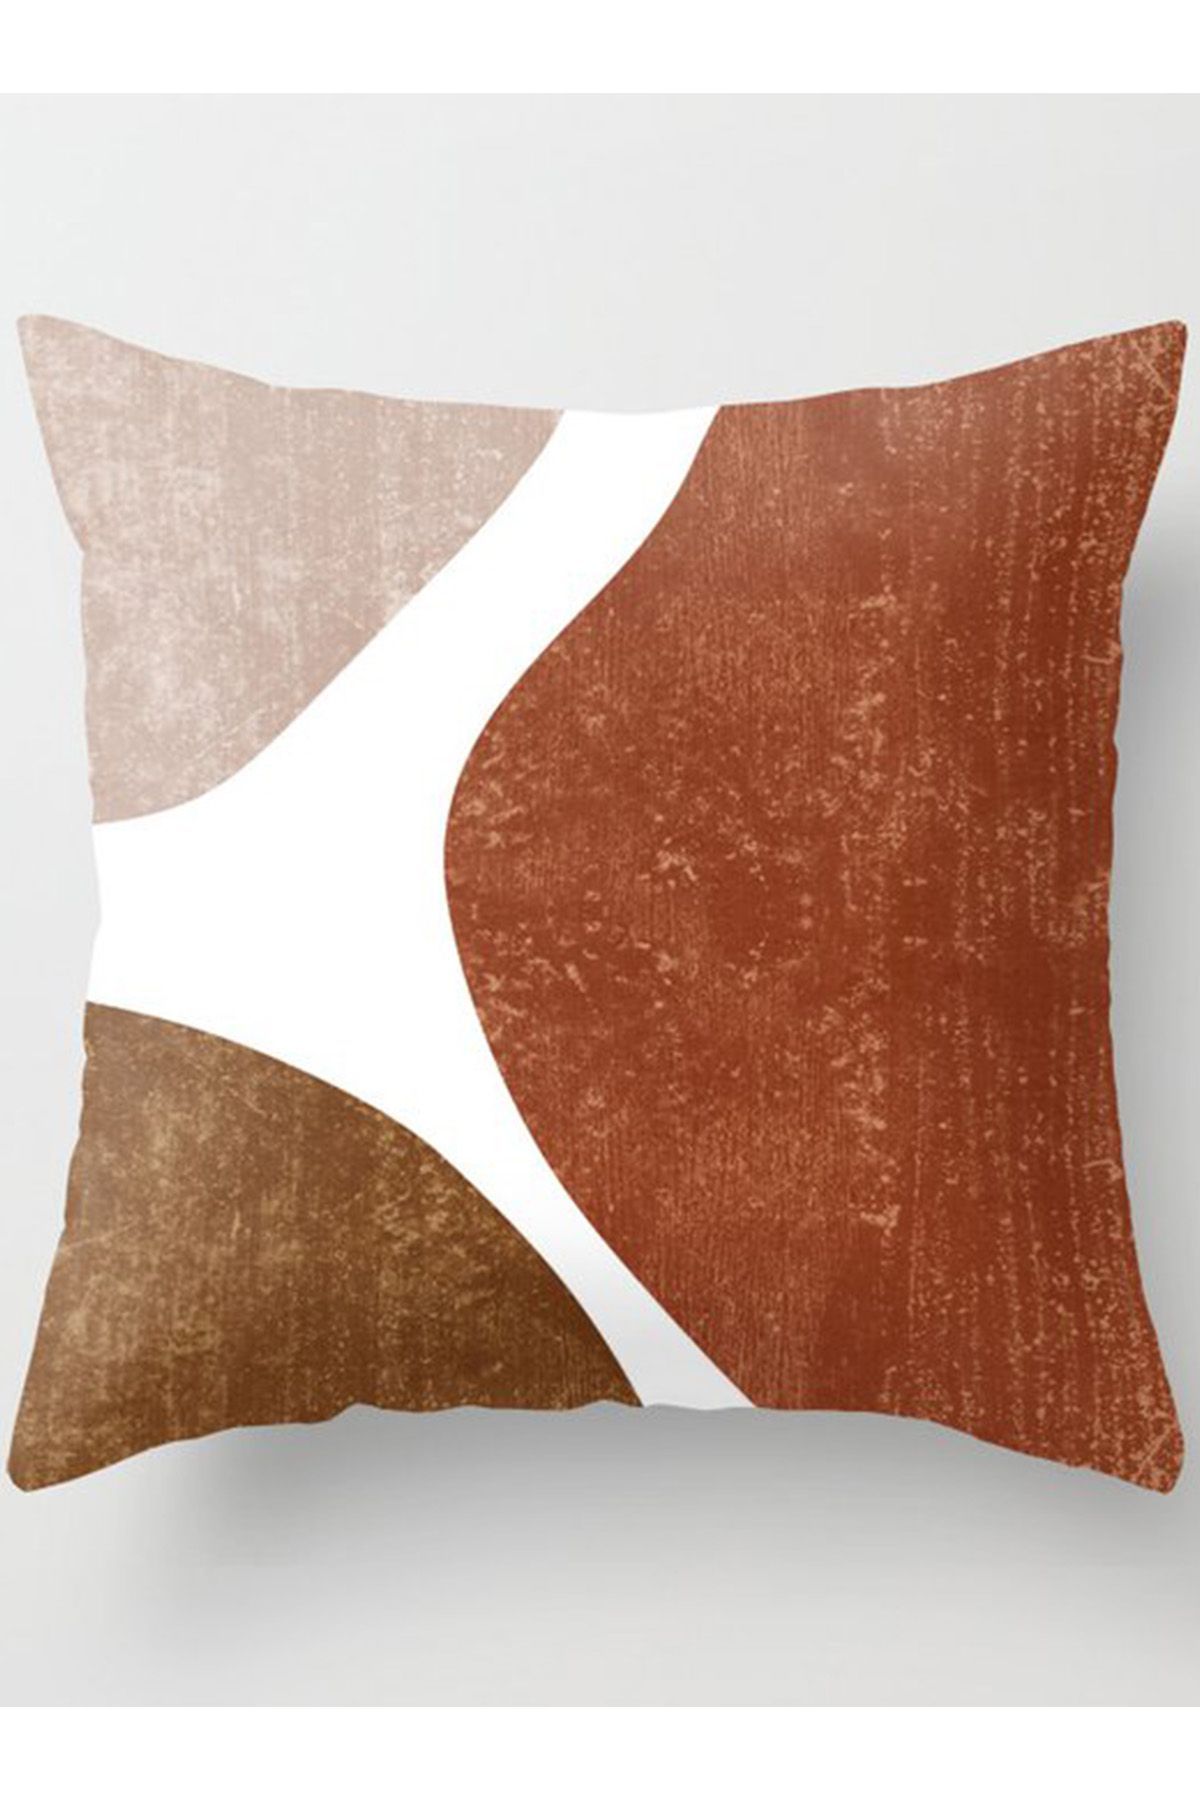 Terracotta Art Throw Pillow